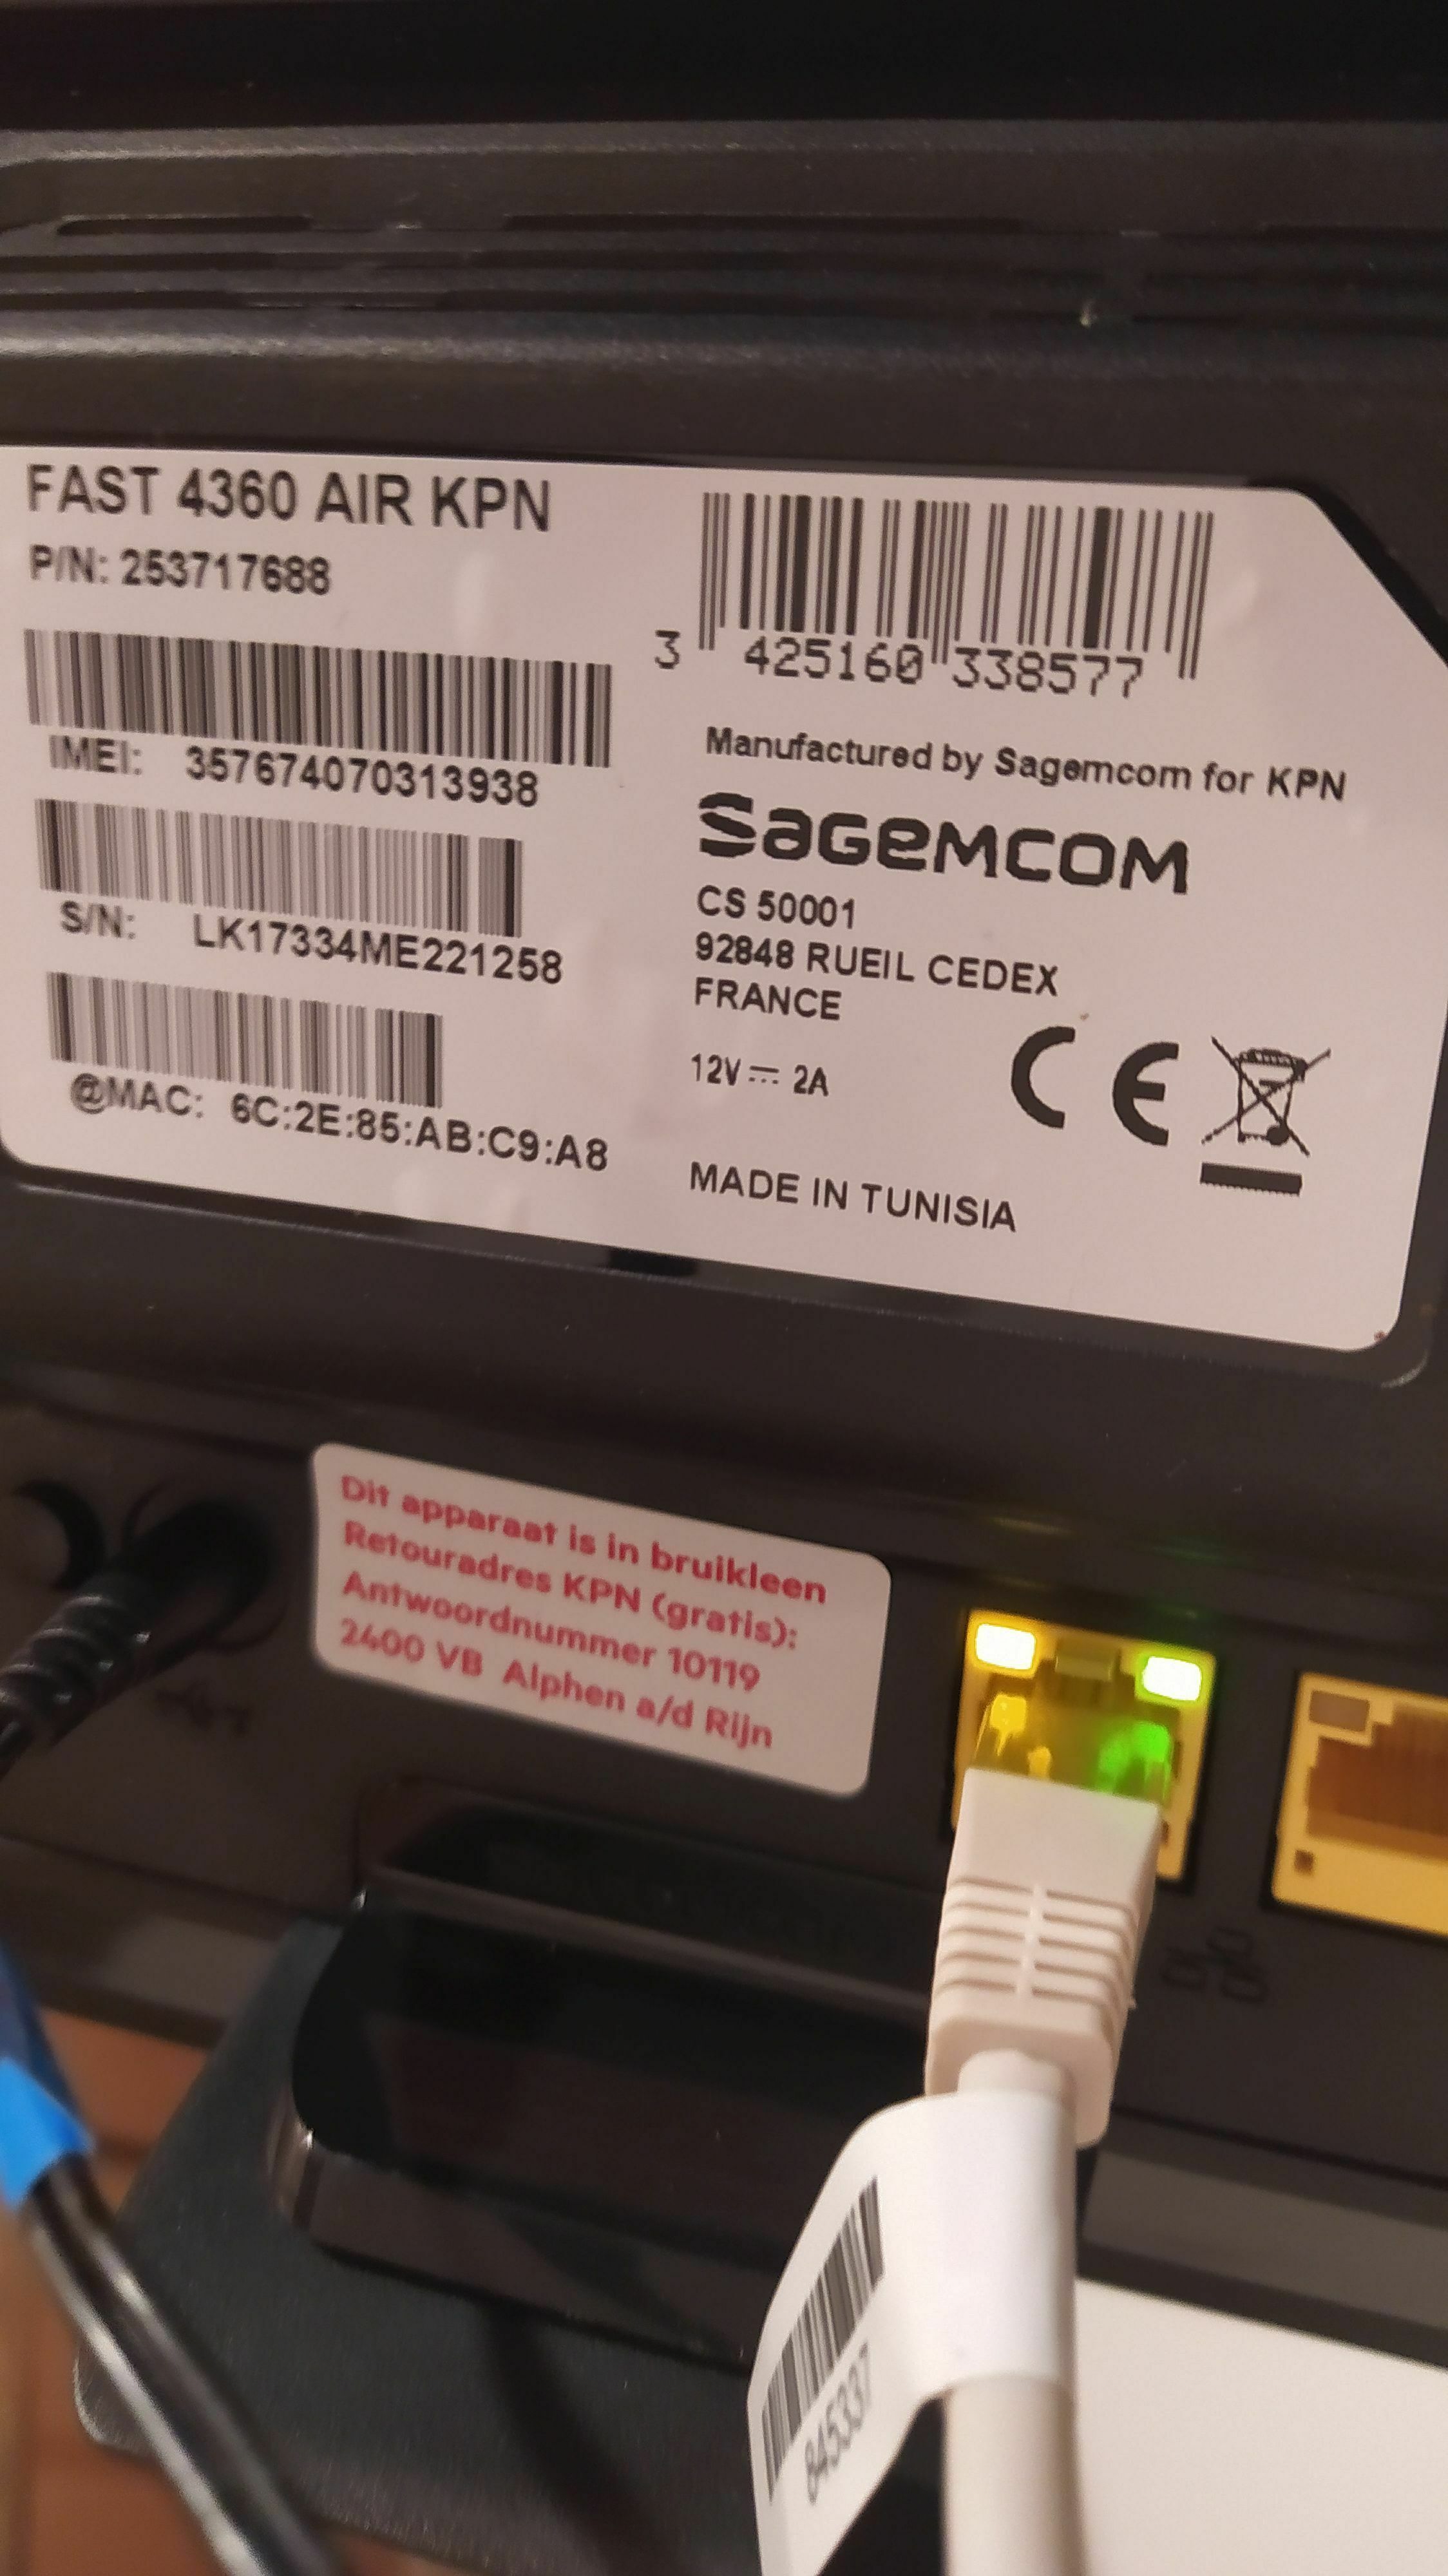 Sagemcom air modem voorzien van een buitenantenne, anders eventueel eigen modem? | KPN Community